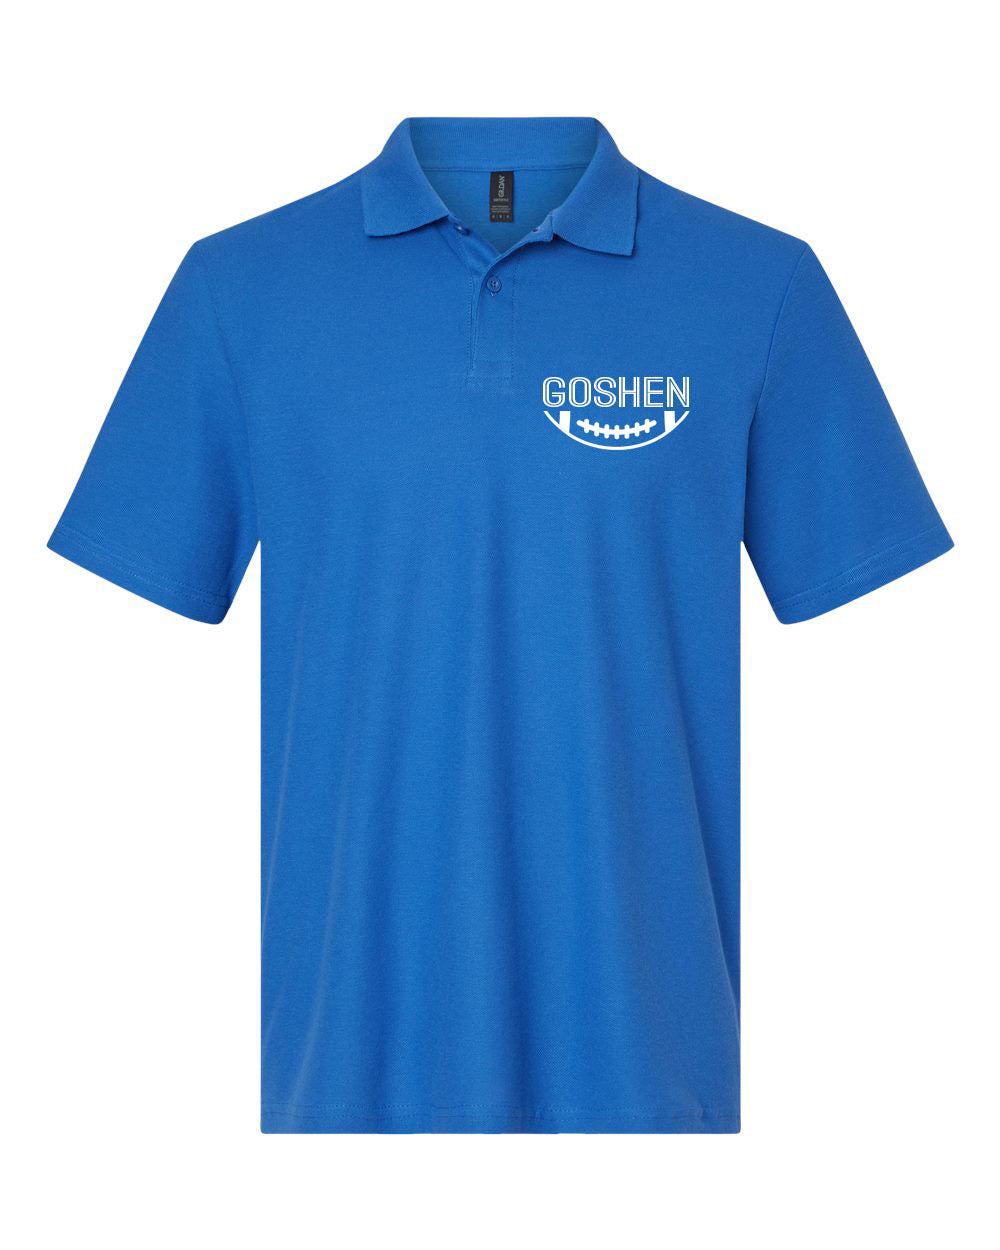 Goshen Football Design 3 Polo T-Shirt